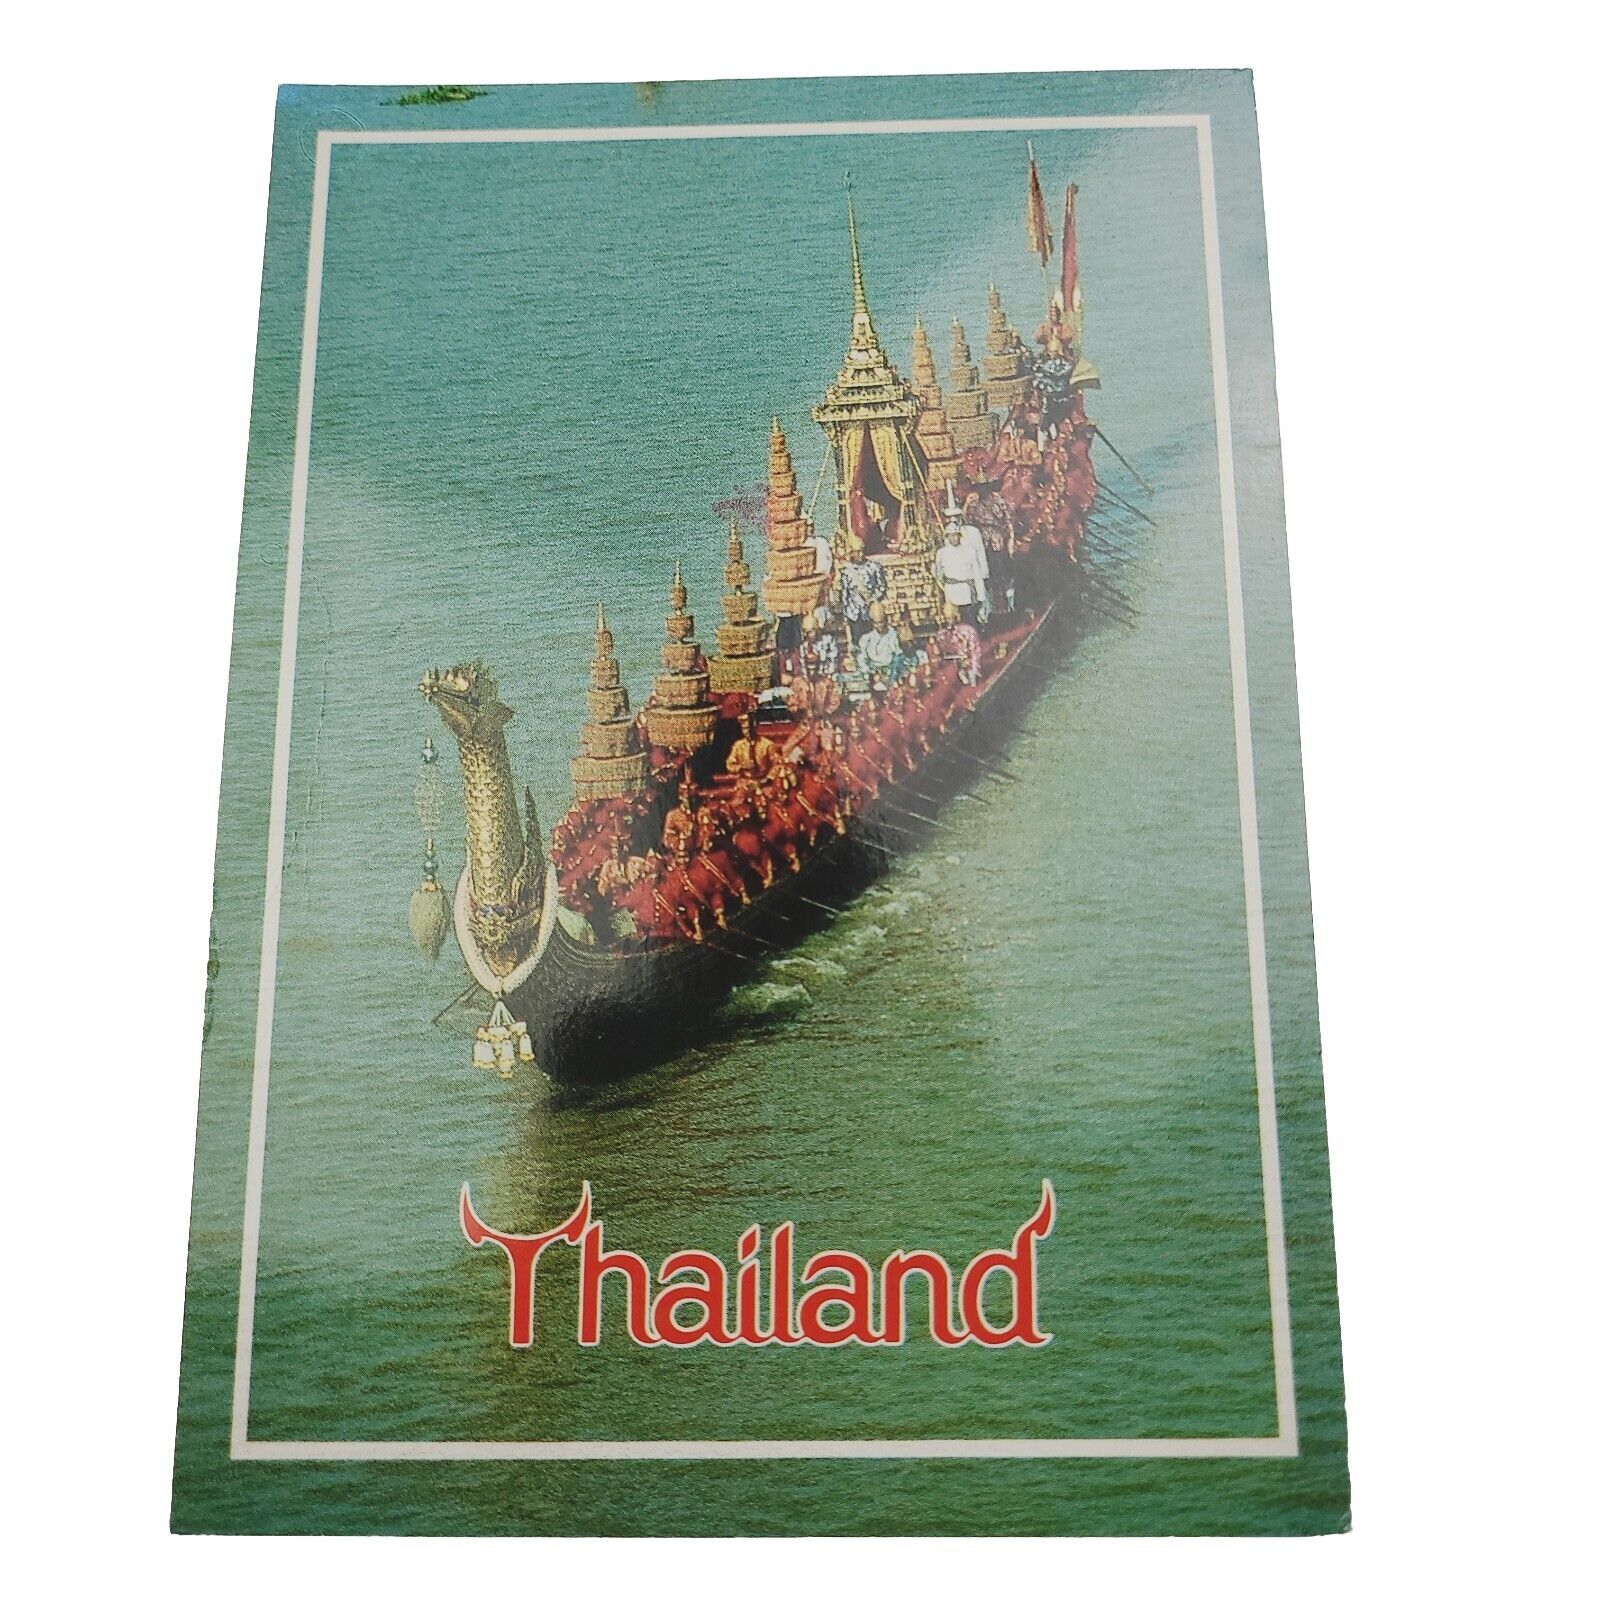 BANGKOK THAILAND POSTCARD SUBANAHONSA KINGS BARGE BOAT CHAO PHAYA RIVER POSTED